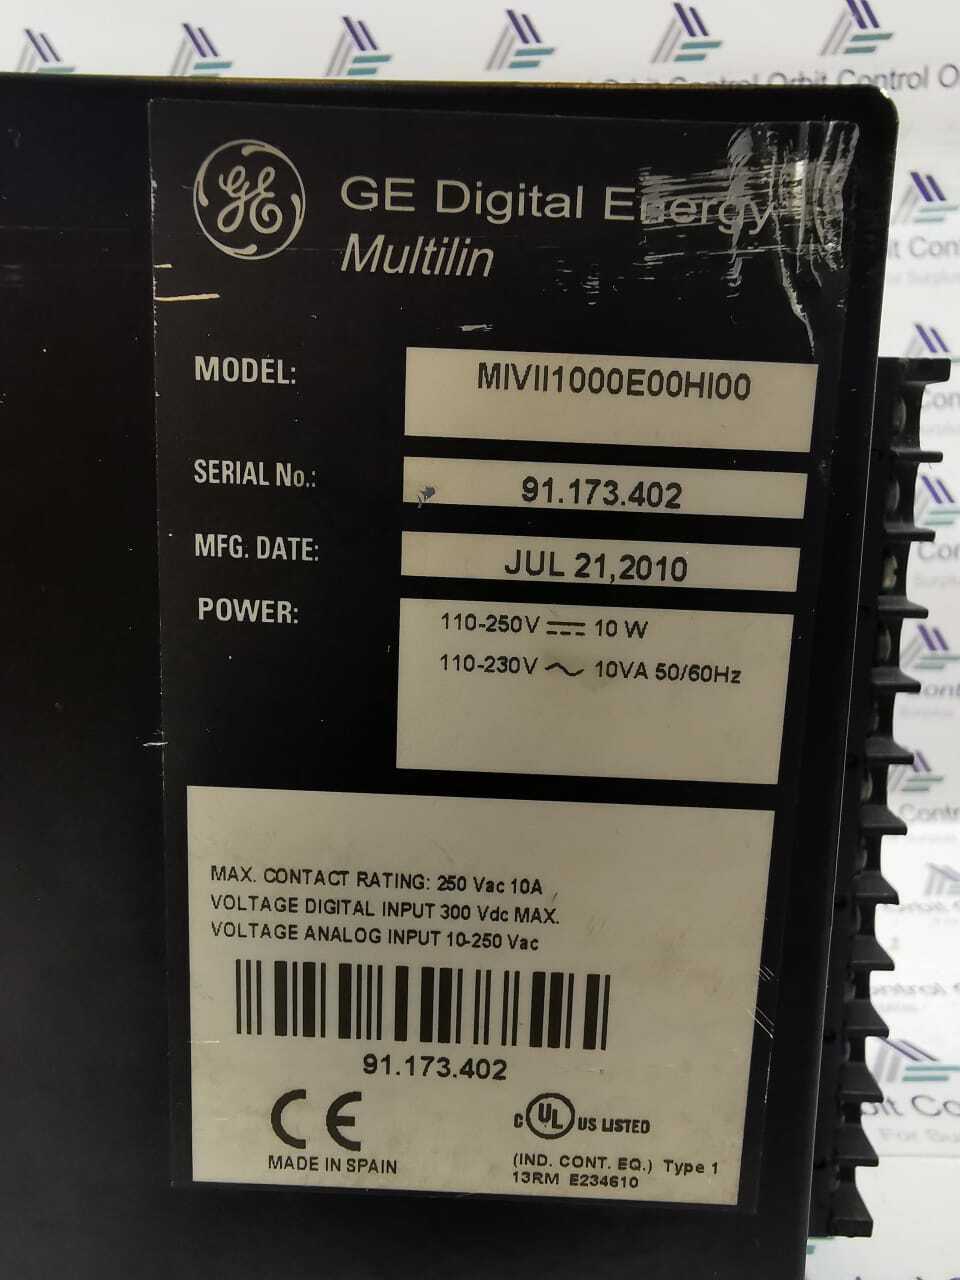 USED GE DIGITAL ENERGY MULTILIN MIVII1000E00HI00 Orbit Surplus